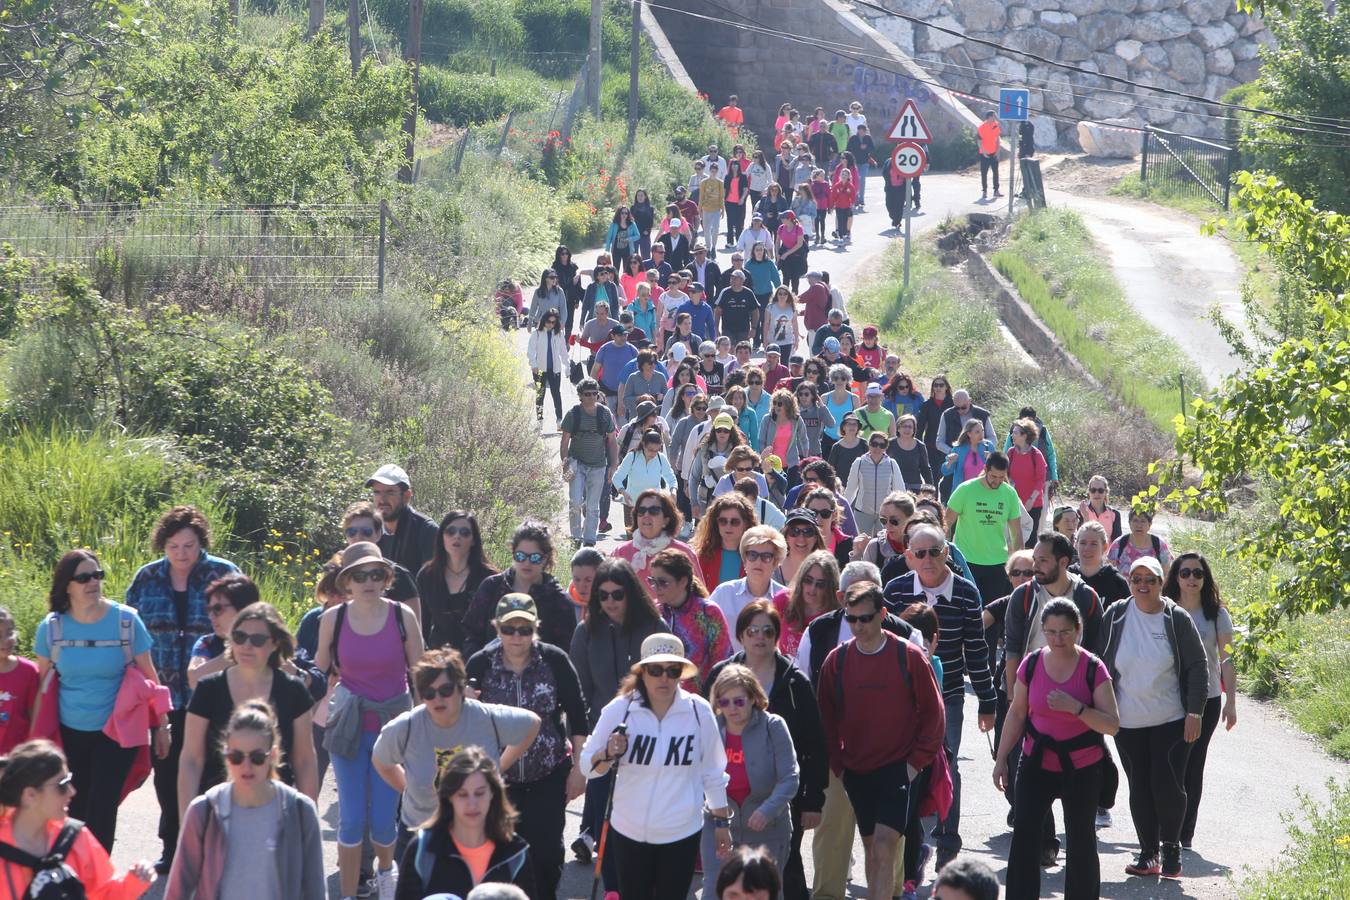 1.200 personas participaron en el útimo Paseo Saludable, un recorrido de doce kilómetros al mirador de los viñedos, a medio camino entre Logroño y El Cortijo.